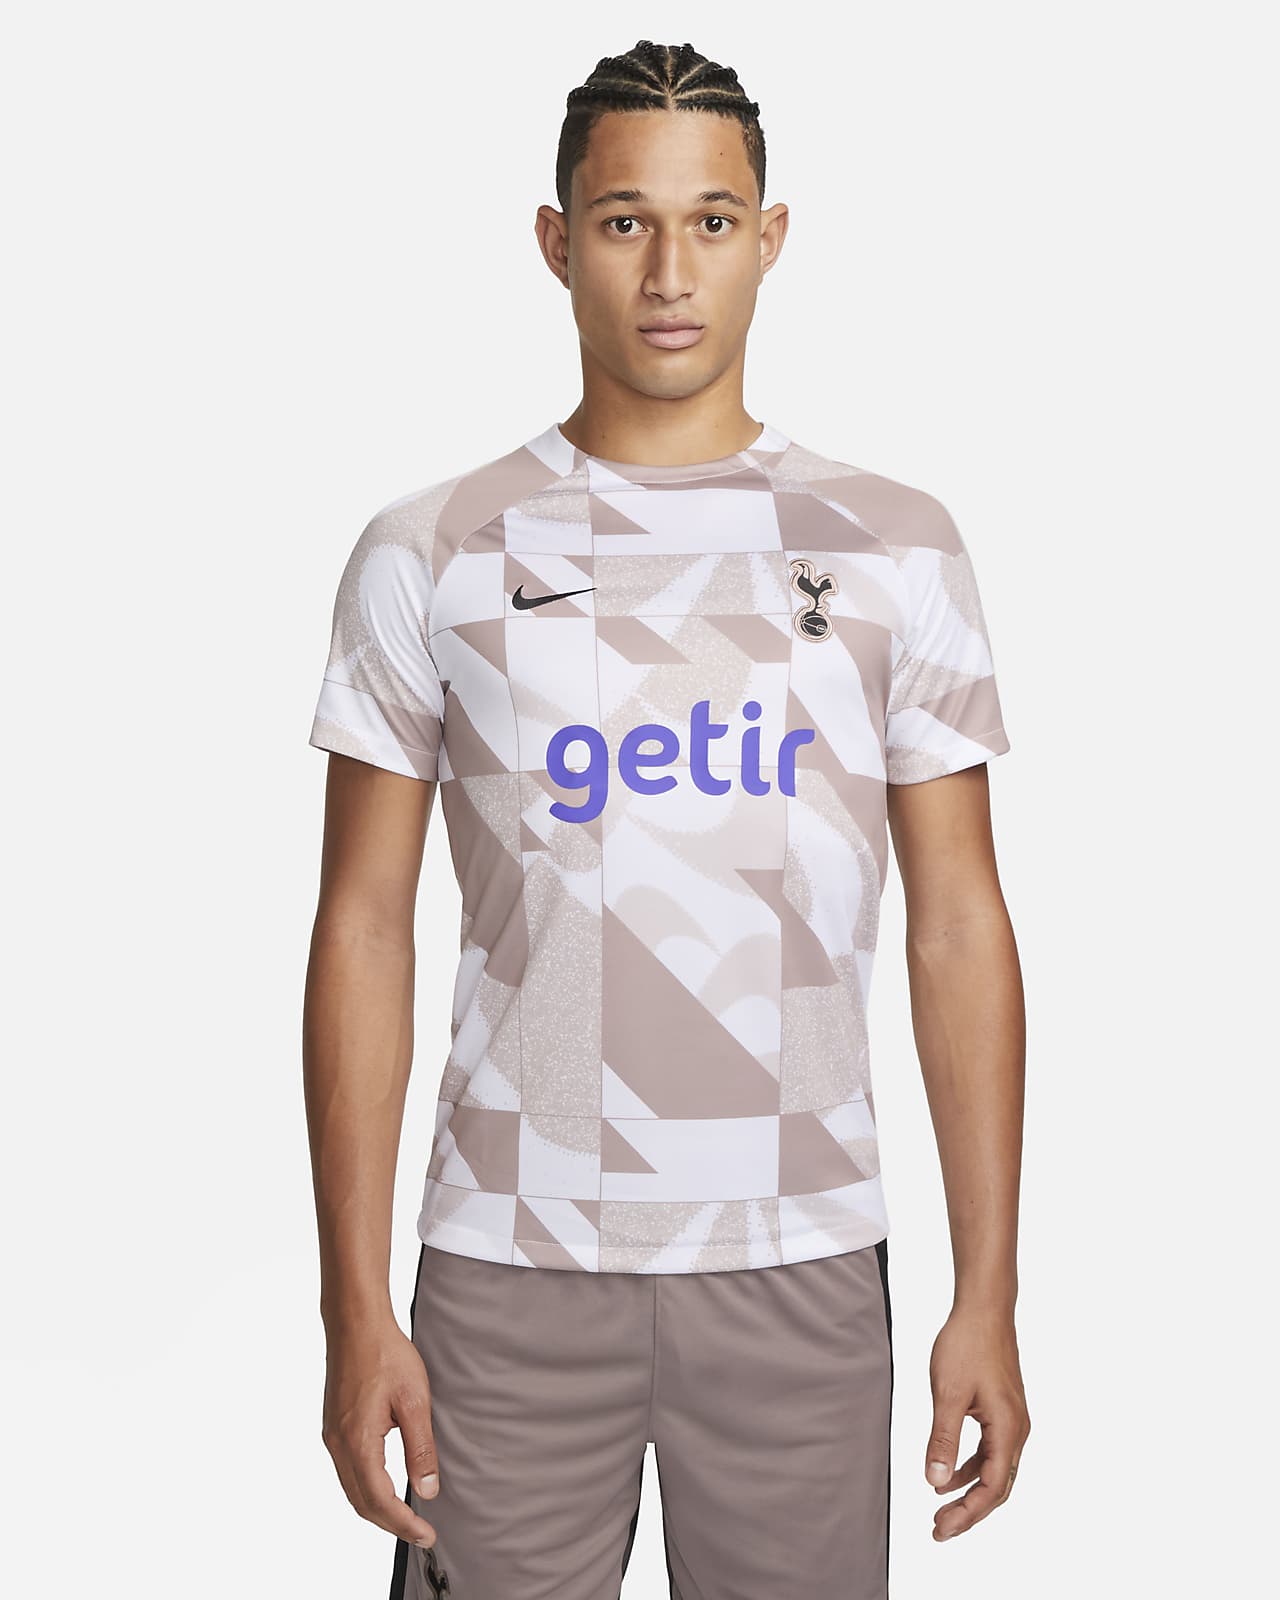 Ανδρική ποδοσφαιρική κοντομάνικη μπλούζα προθέρμανσης Nike Dri-FIT εναλλακτικής εμφάνισης Τότεναμ Academy Pro